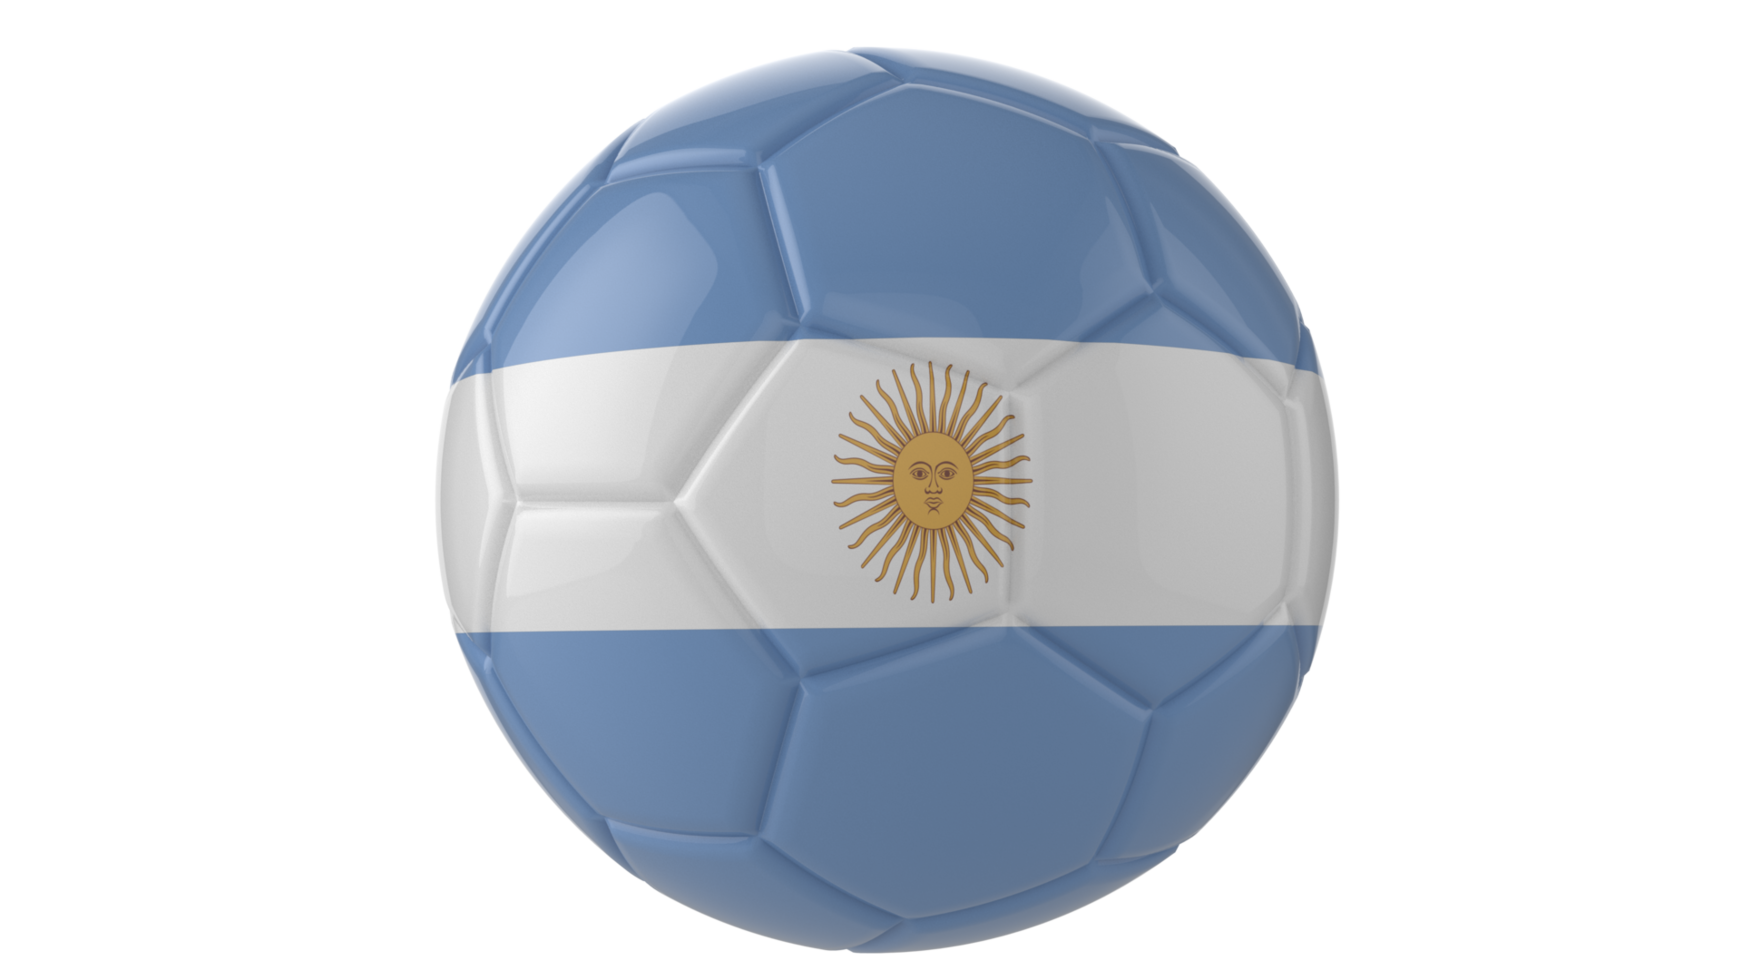 3d bola de futebol realista com a bandeira do uruguai isolada em fundo png transparente